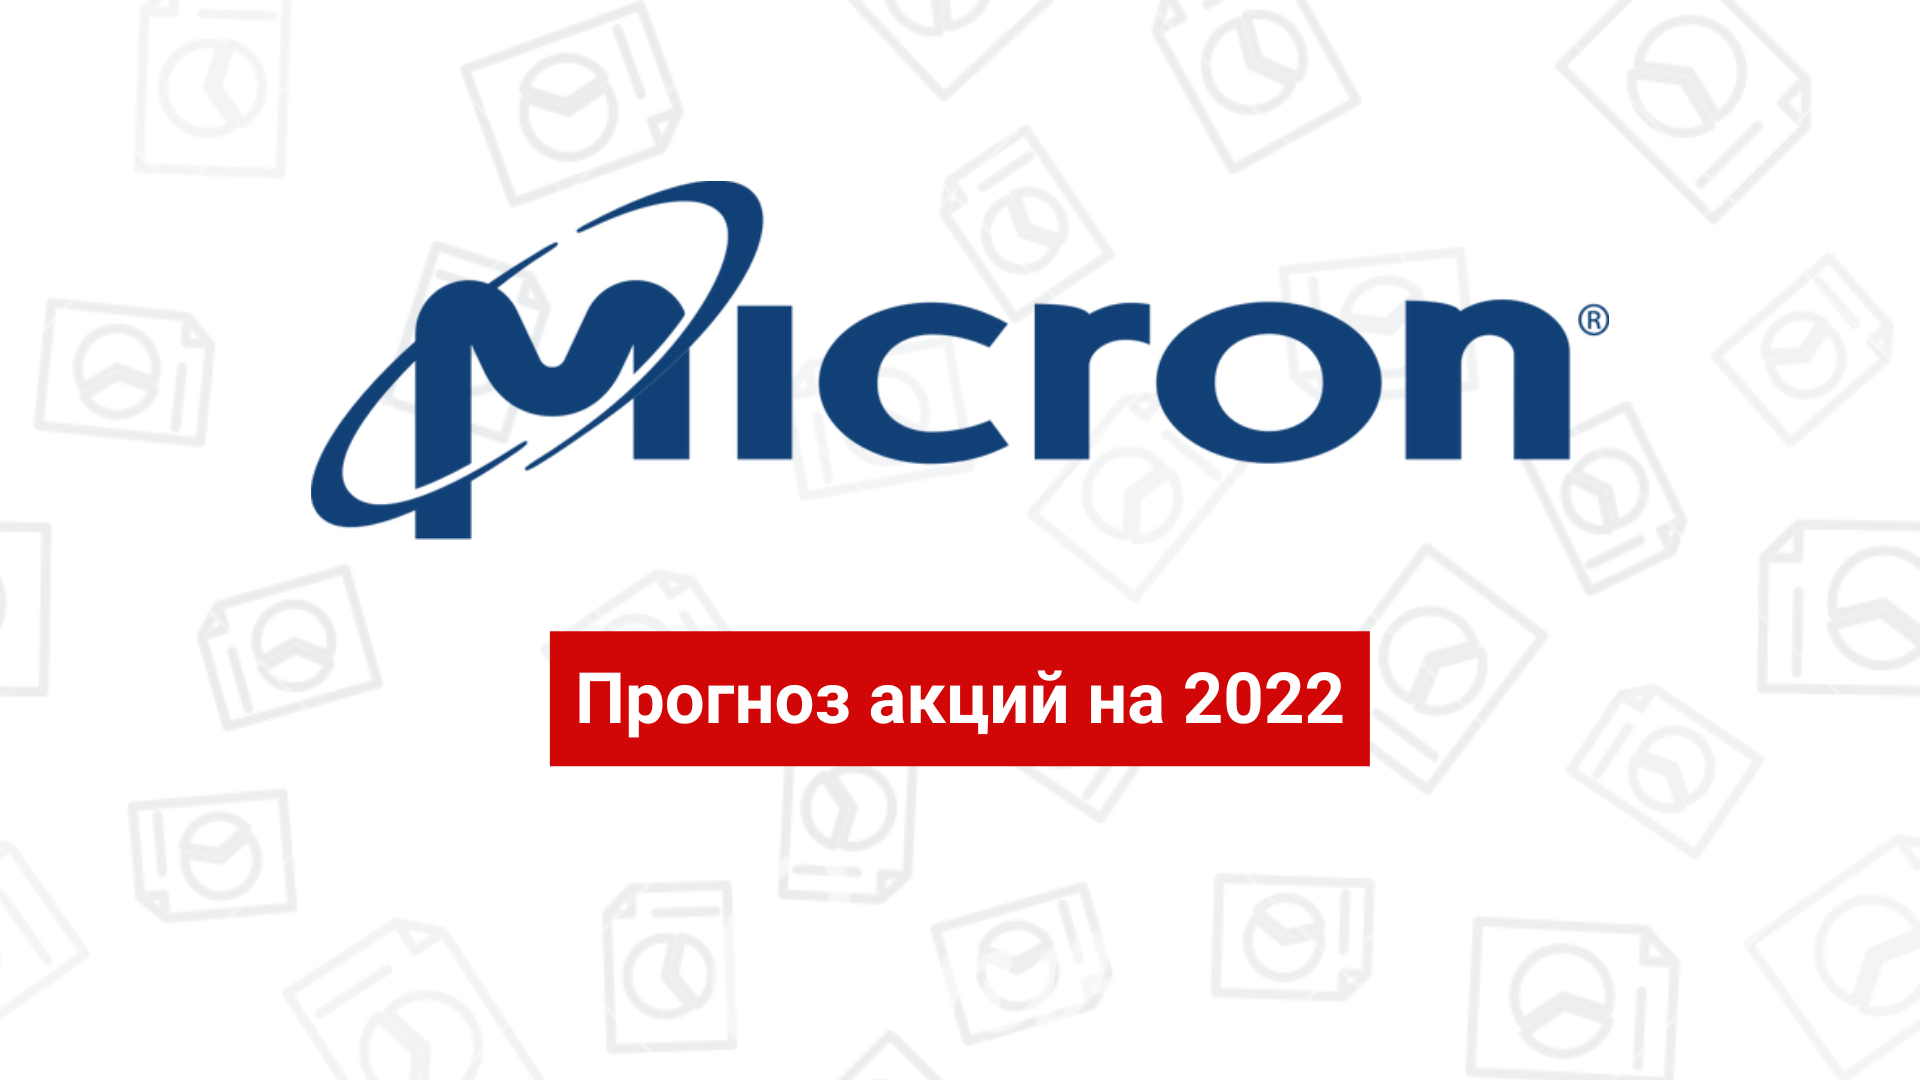 Акции Micron: прогноз на 2022 и мнения аналитиков